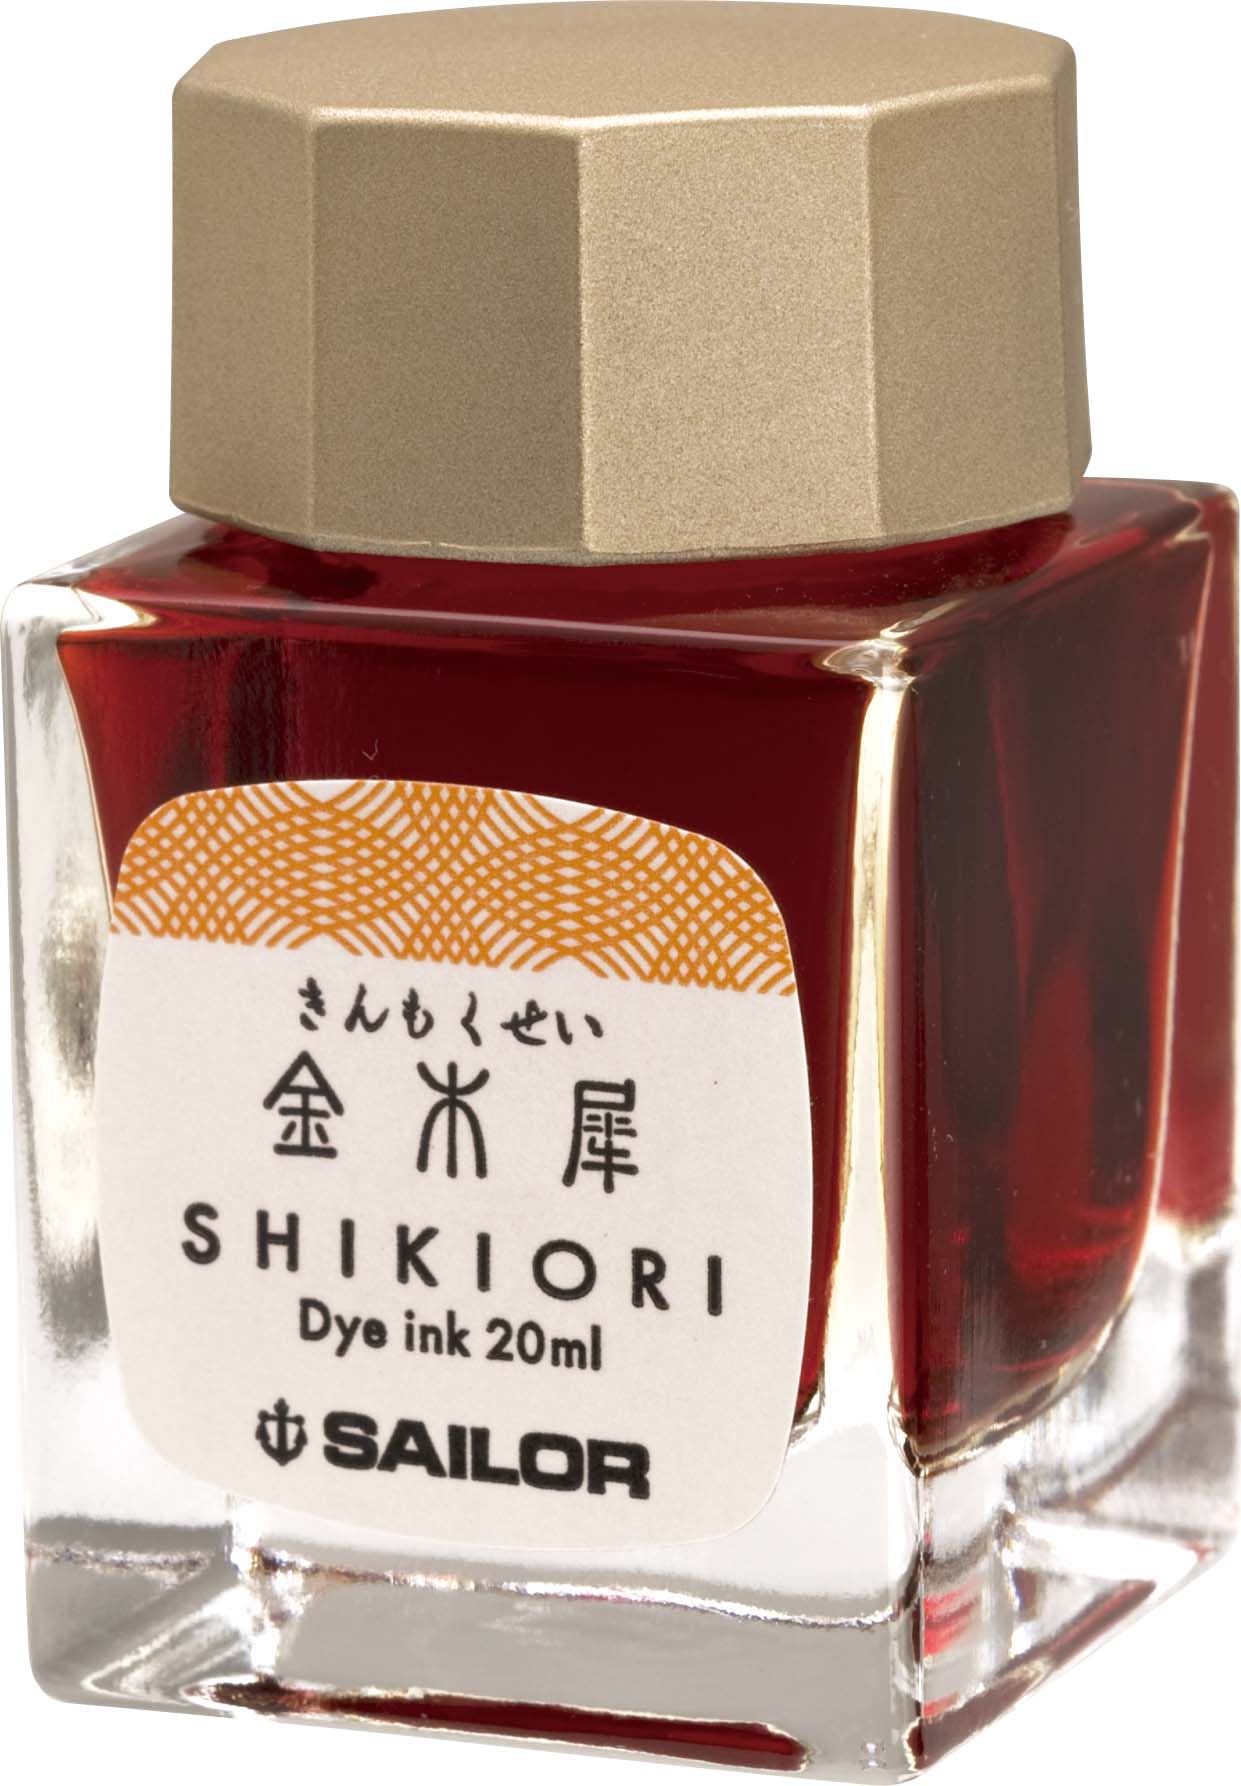 Sailor Shikiori BOTTLED INK